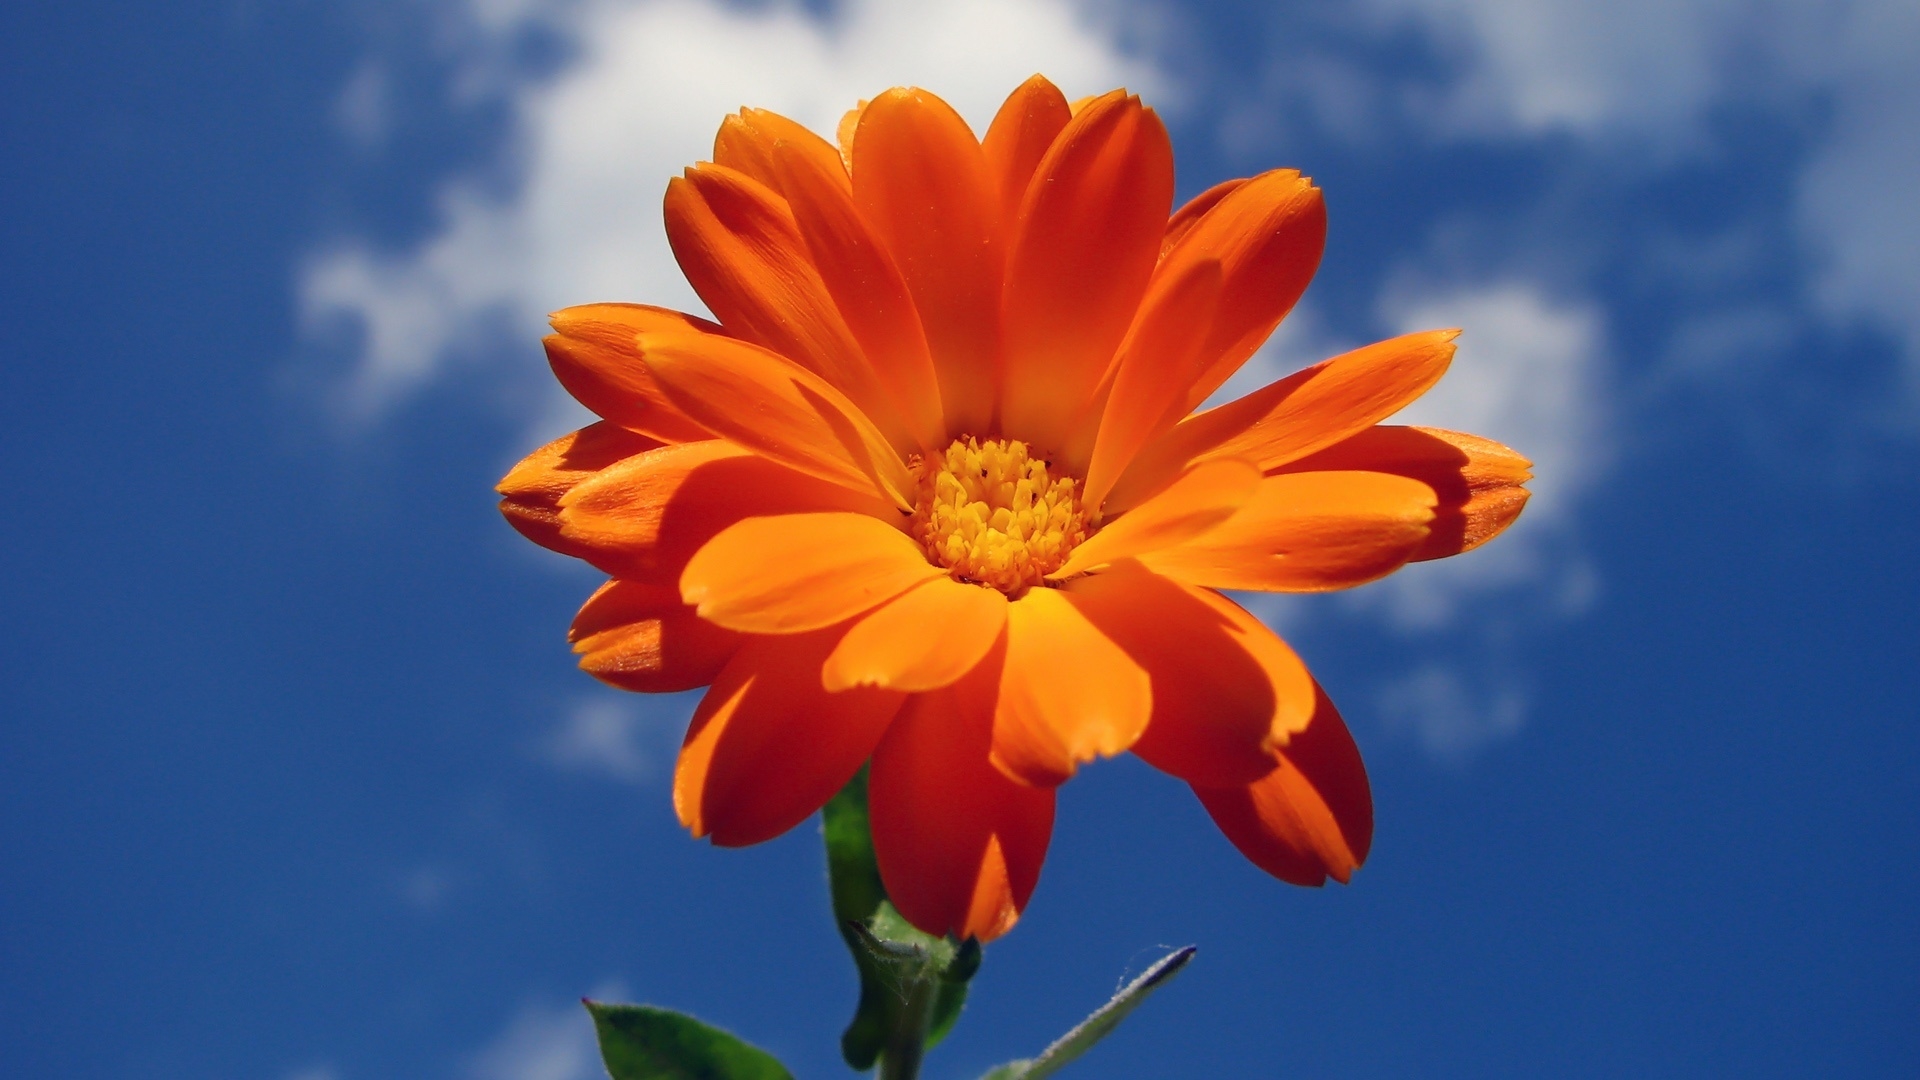 Orange Nice Flower for 1920 x 1080 HDTV 1080p resolution